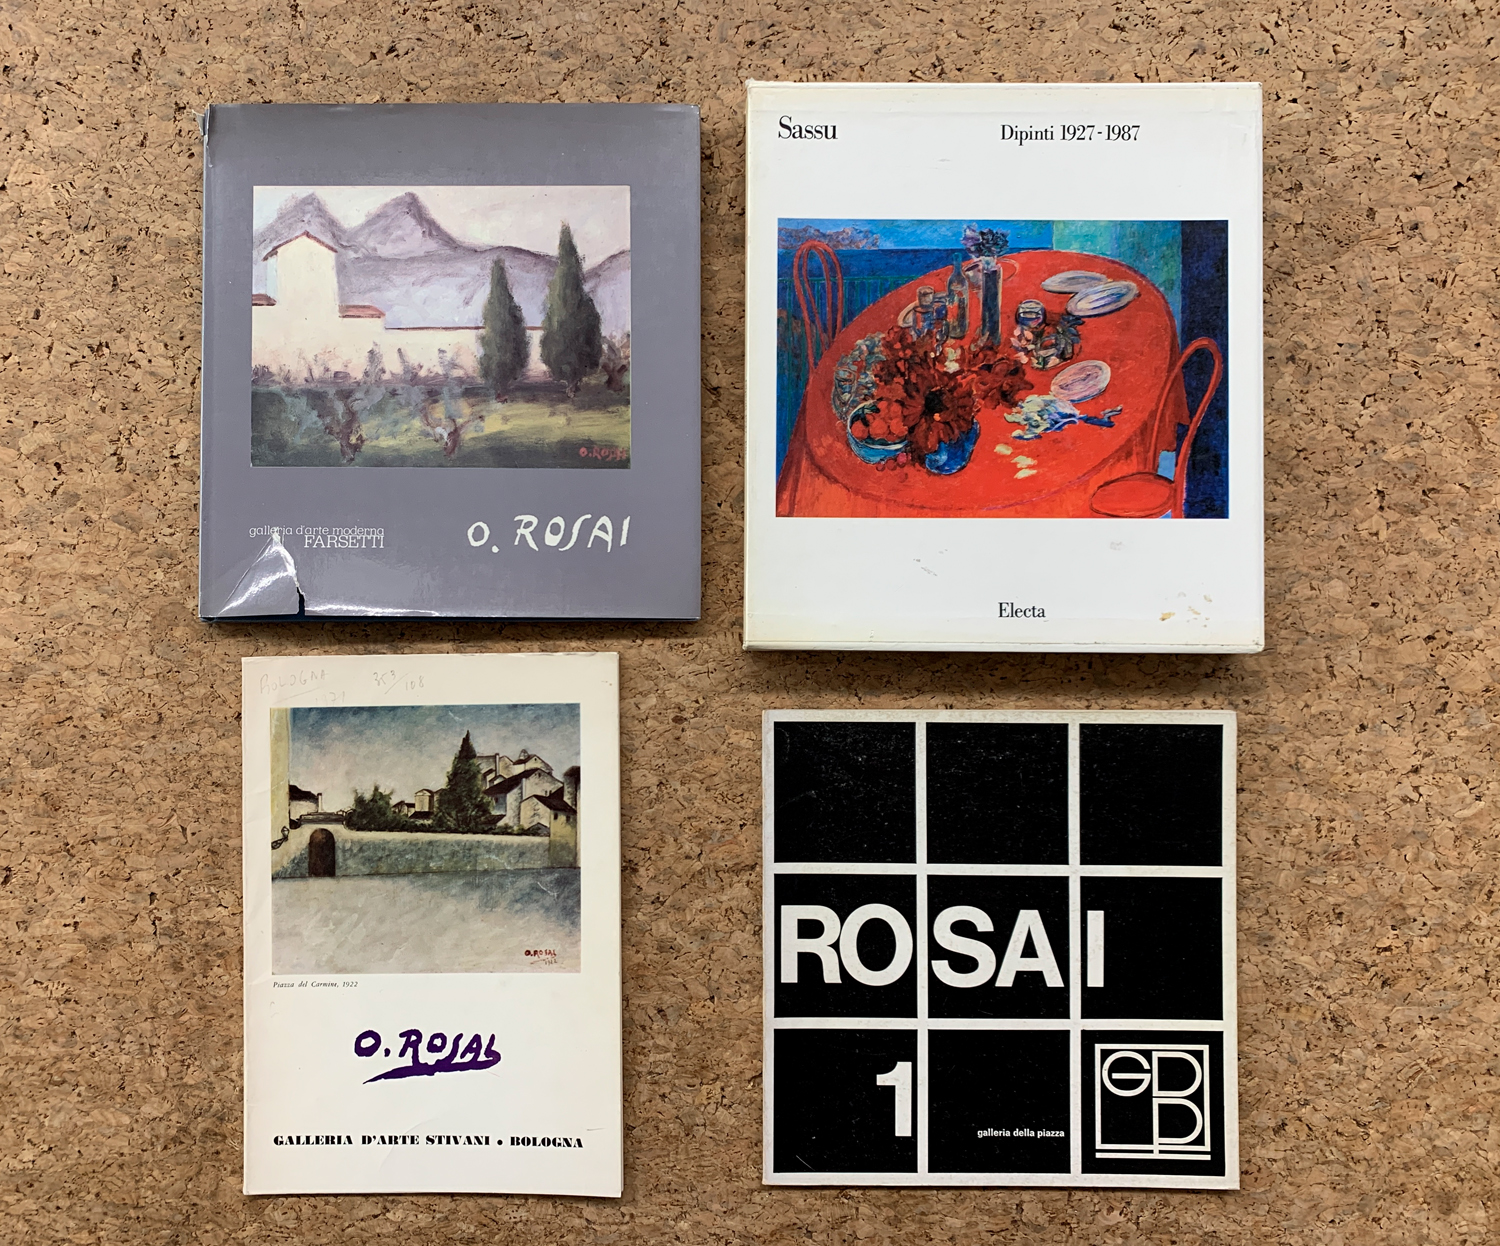 OTTONE ROSAI E ALIGI SASSU - Lotto unico di 4 cataloghi